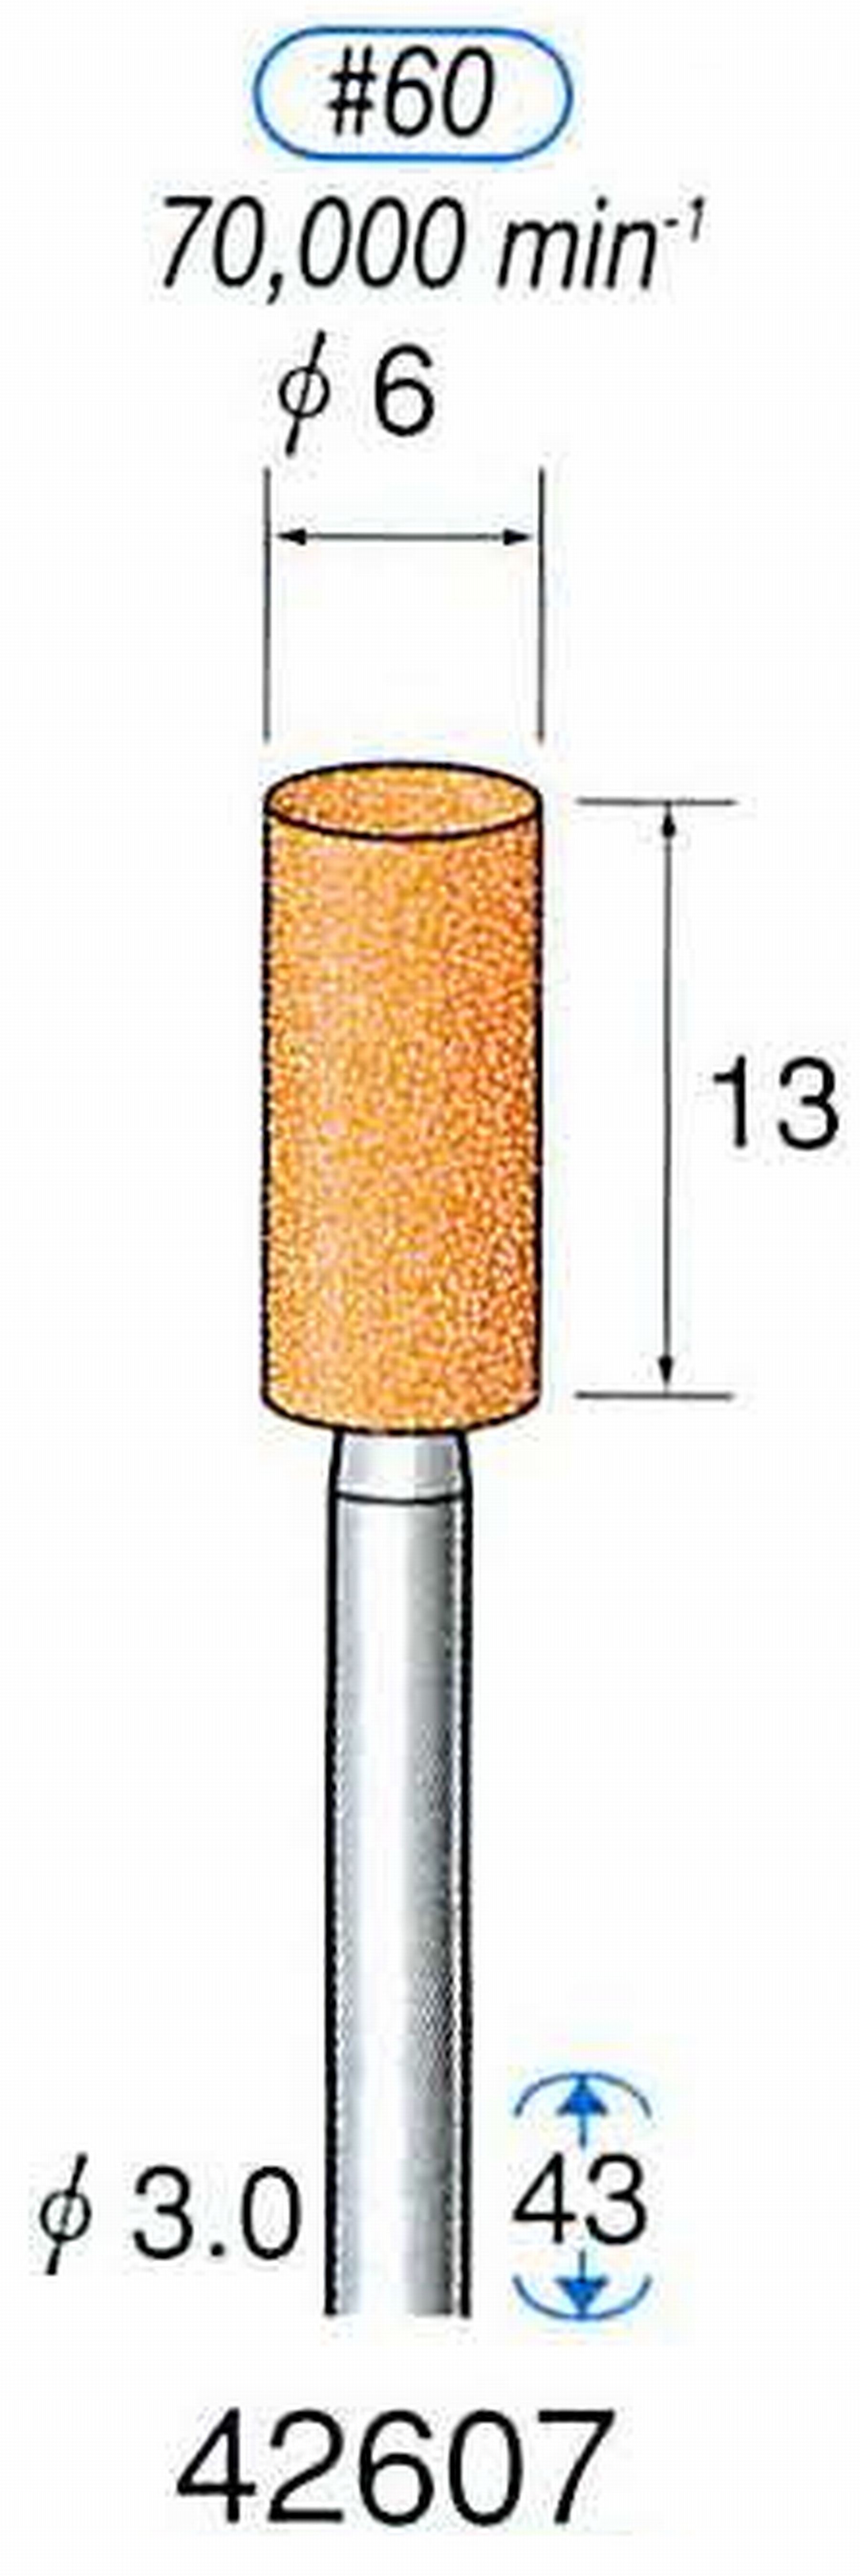 ナカニシ/NAKANISHI 軸付砥石(WA砥粒) 一般研削用 軸径(シャンク) φ3.0mm 42607